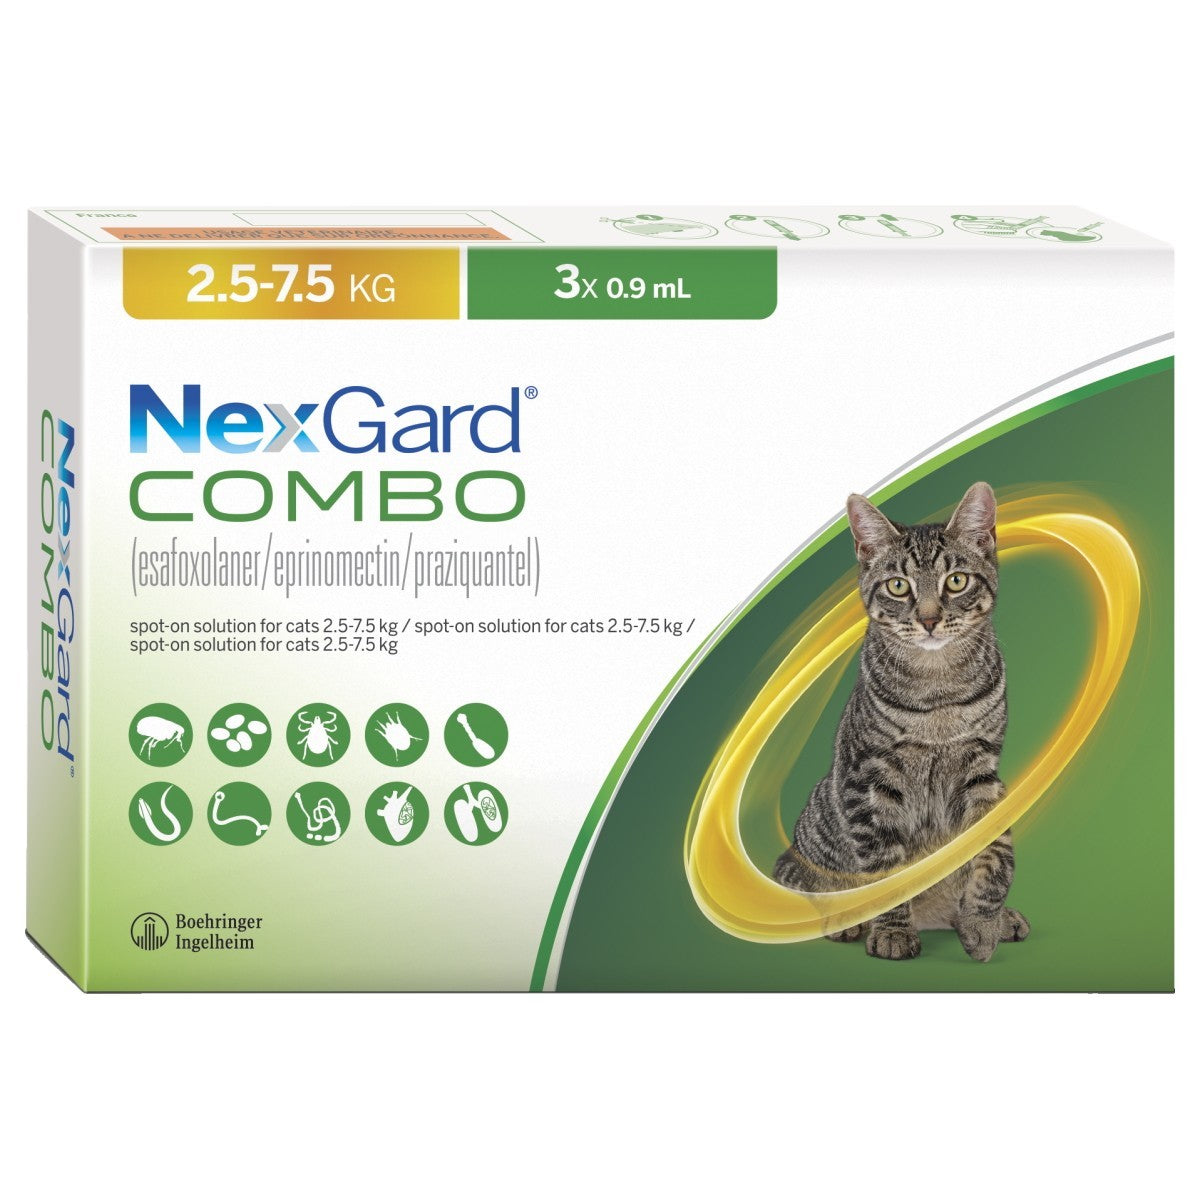 NexGard Combo solutie spot-on pentru pisici de 2.5-7.5 kg, 1x0.9ml